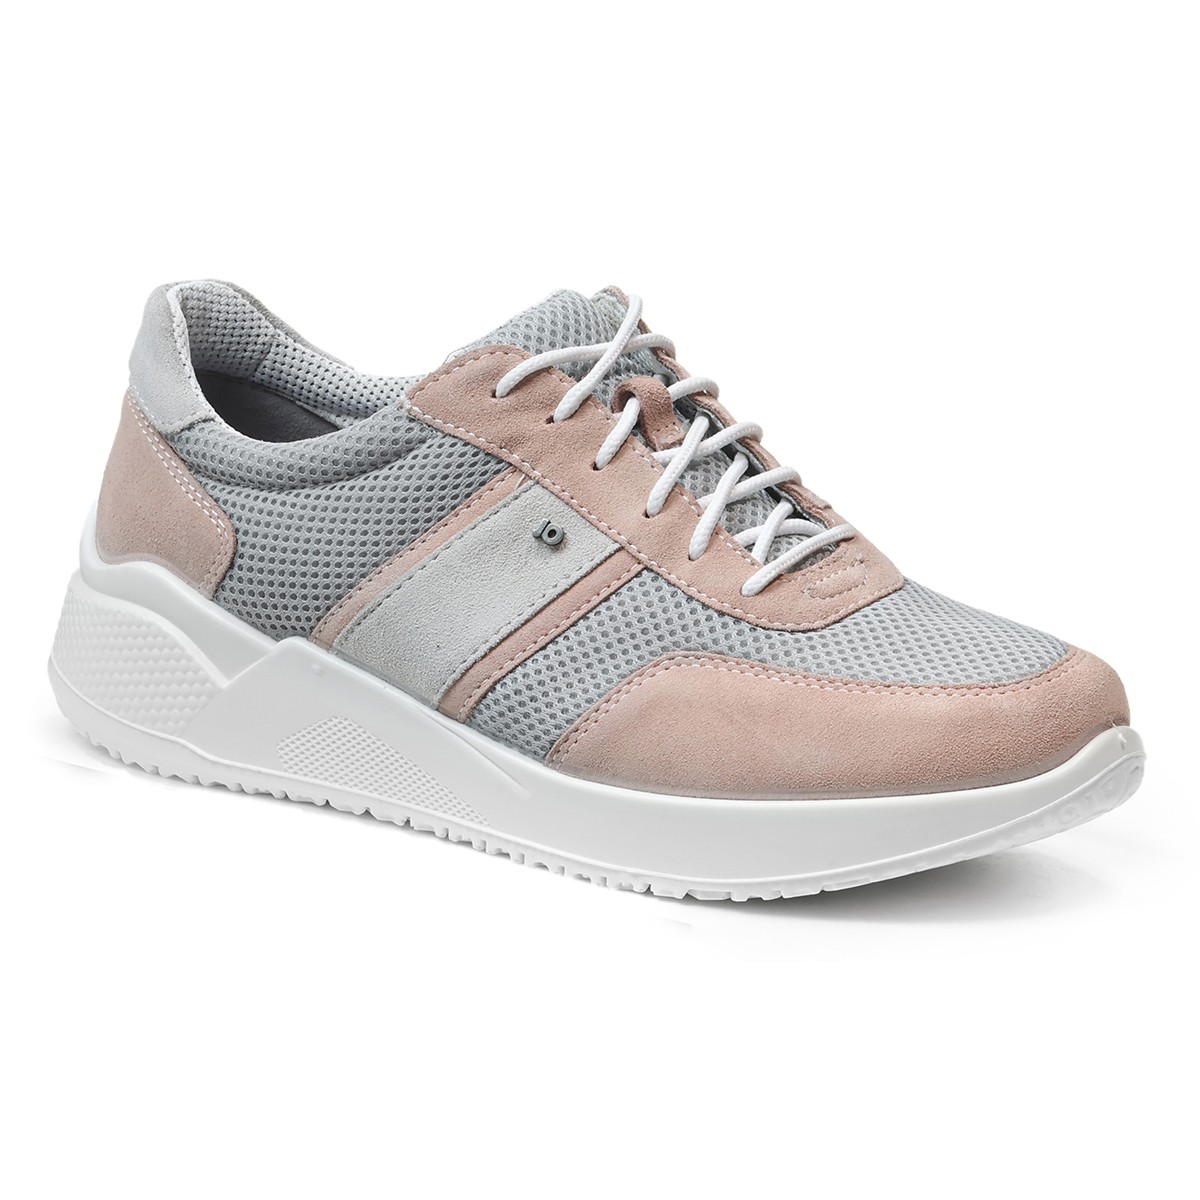 Женские кроссовки Sneaker 21, Jomos, серые с пудрово-розовым 42918